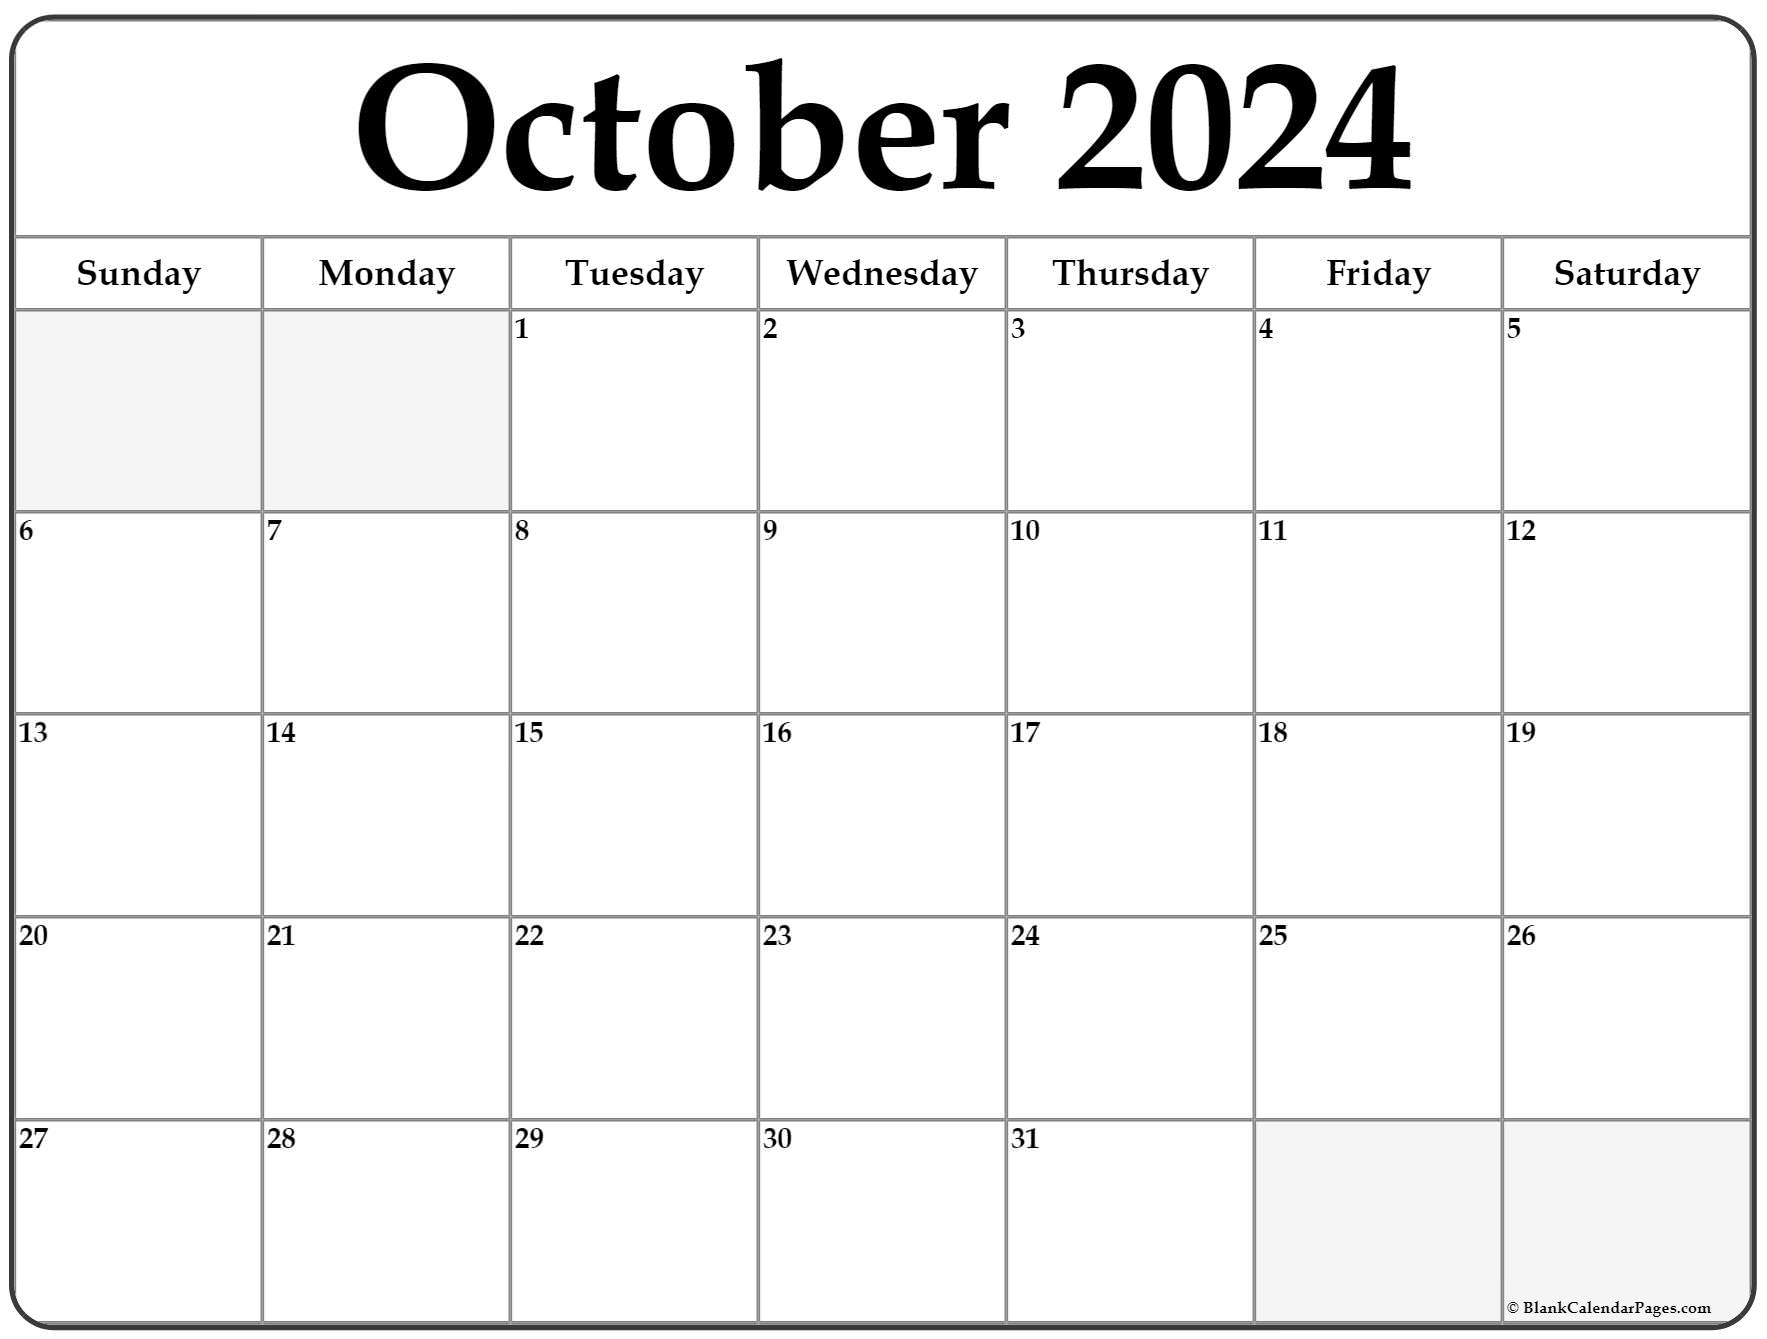 Free October 2022 Calendar October 2022 Calendar | Free Printable Calendar Templates